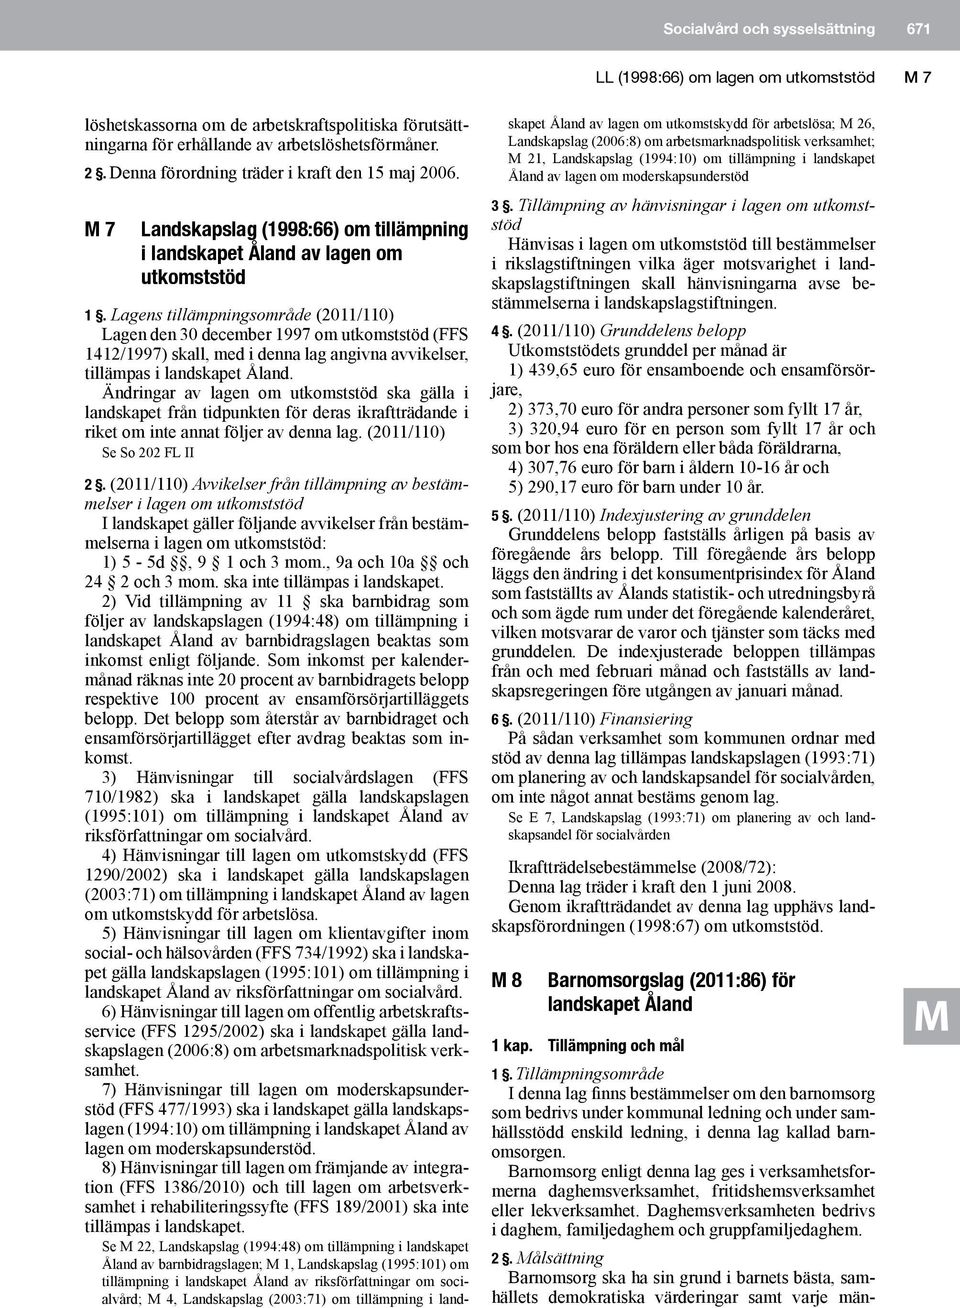 Lagens tillämpningsområde (2011/110) Lagen den 30 december 1997 om utkomststöd (FFS 1412/1997) skall, med i denna lag angivna avvikelser, tillämpas i landskapet Åland.